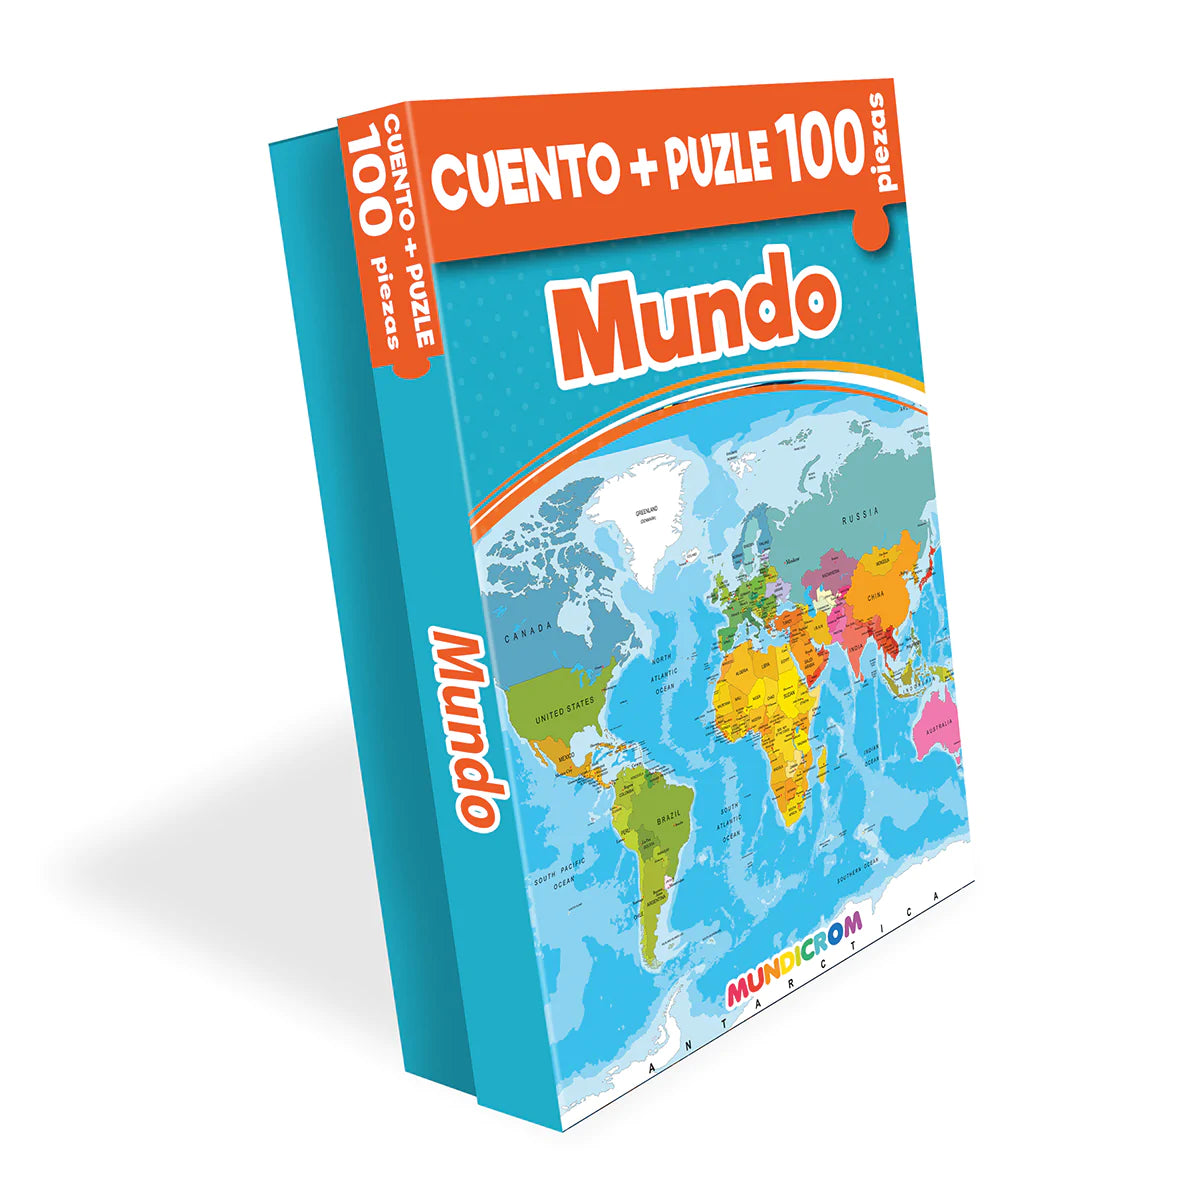 Libro Infantil Cuento Mundo + Puzle 100 Piezas Mundicrom